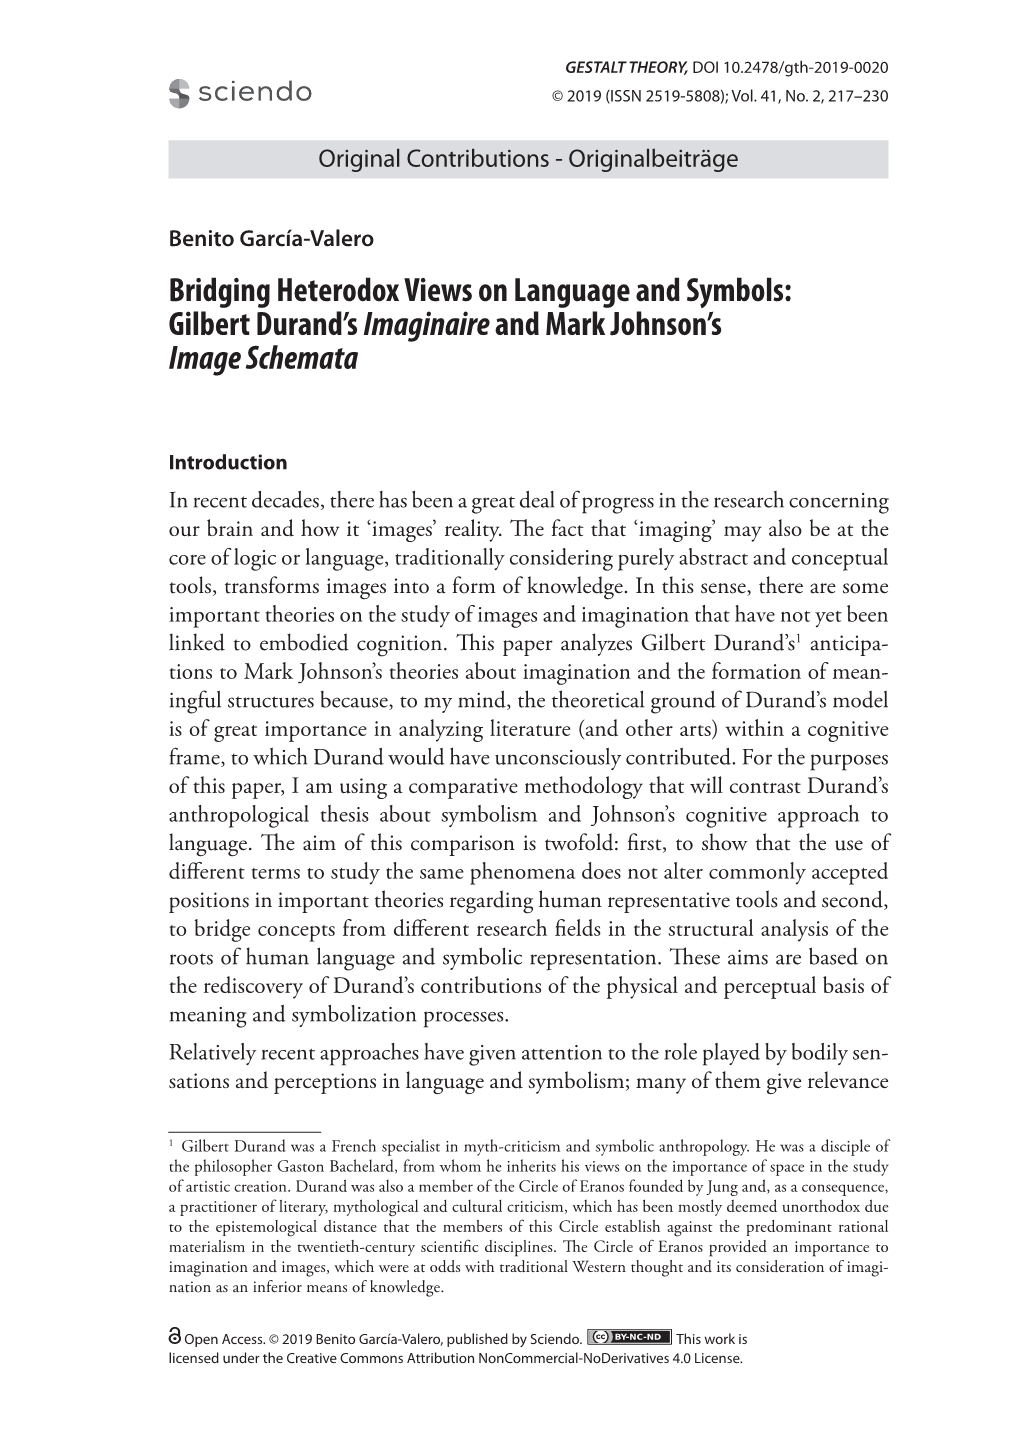 Bridging Heterodox Views on Language and Symbols: Gilbert Durand's Imaginaireand Mark Johnson's Image Schemata